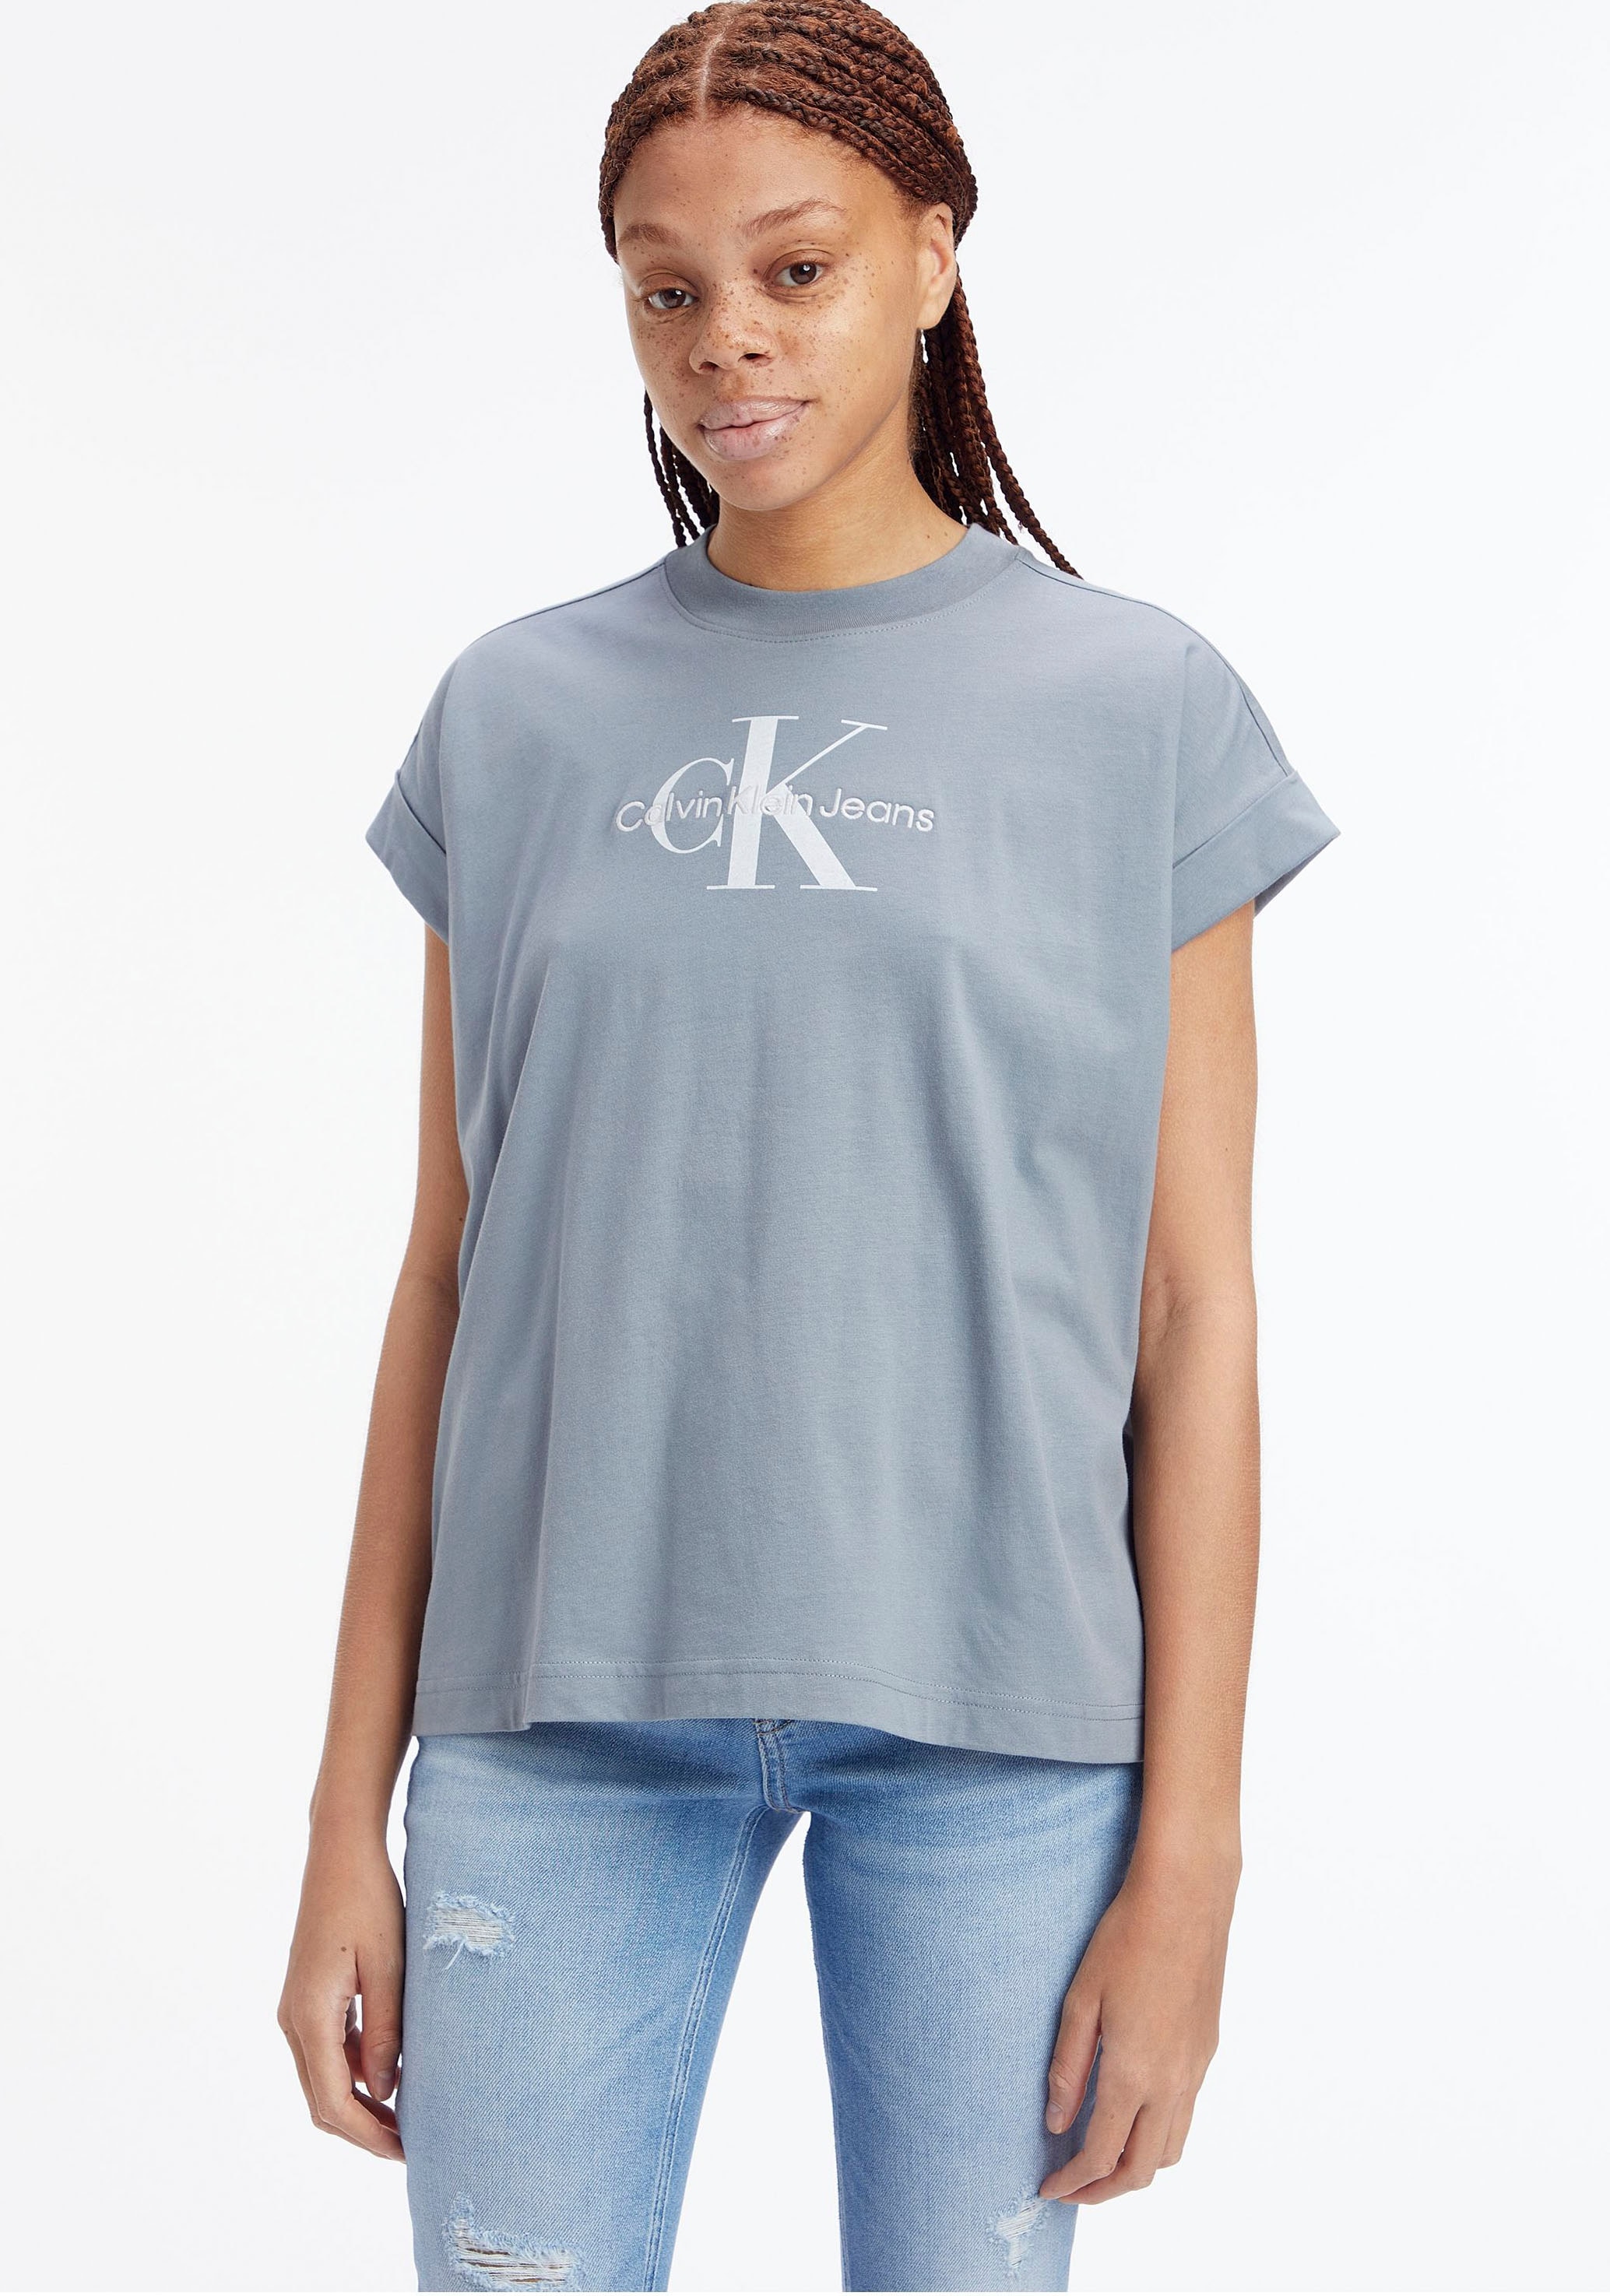 Calvin Klein mit Ärmeln an breitem Umschlagbund shoppen den T-Shirt, Jeans